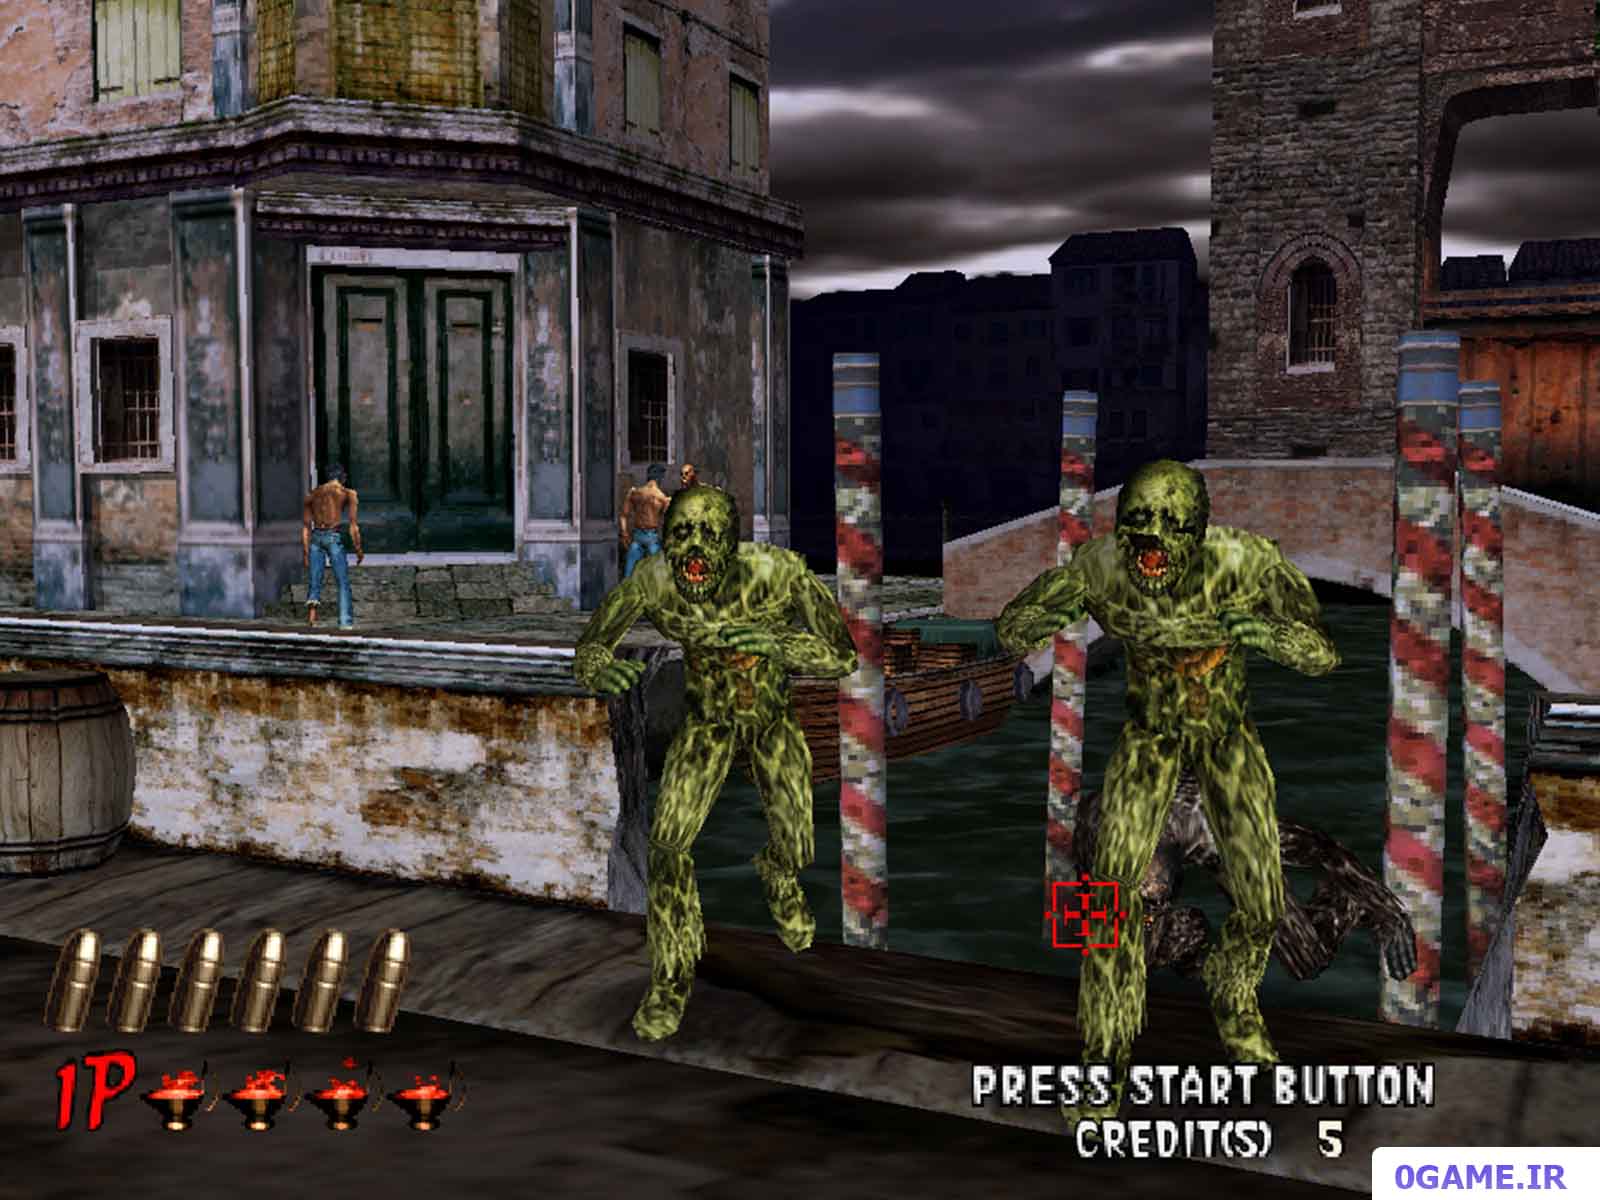 دانلود بازی خانه مردگان 2 (The House of the Dead II) نسخه کامل برای کامپیوتر